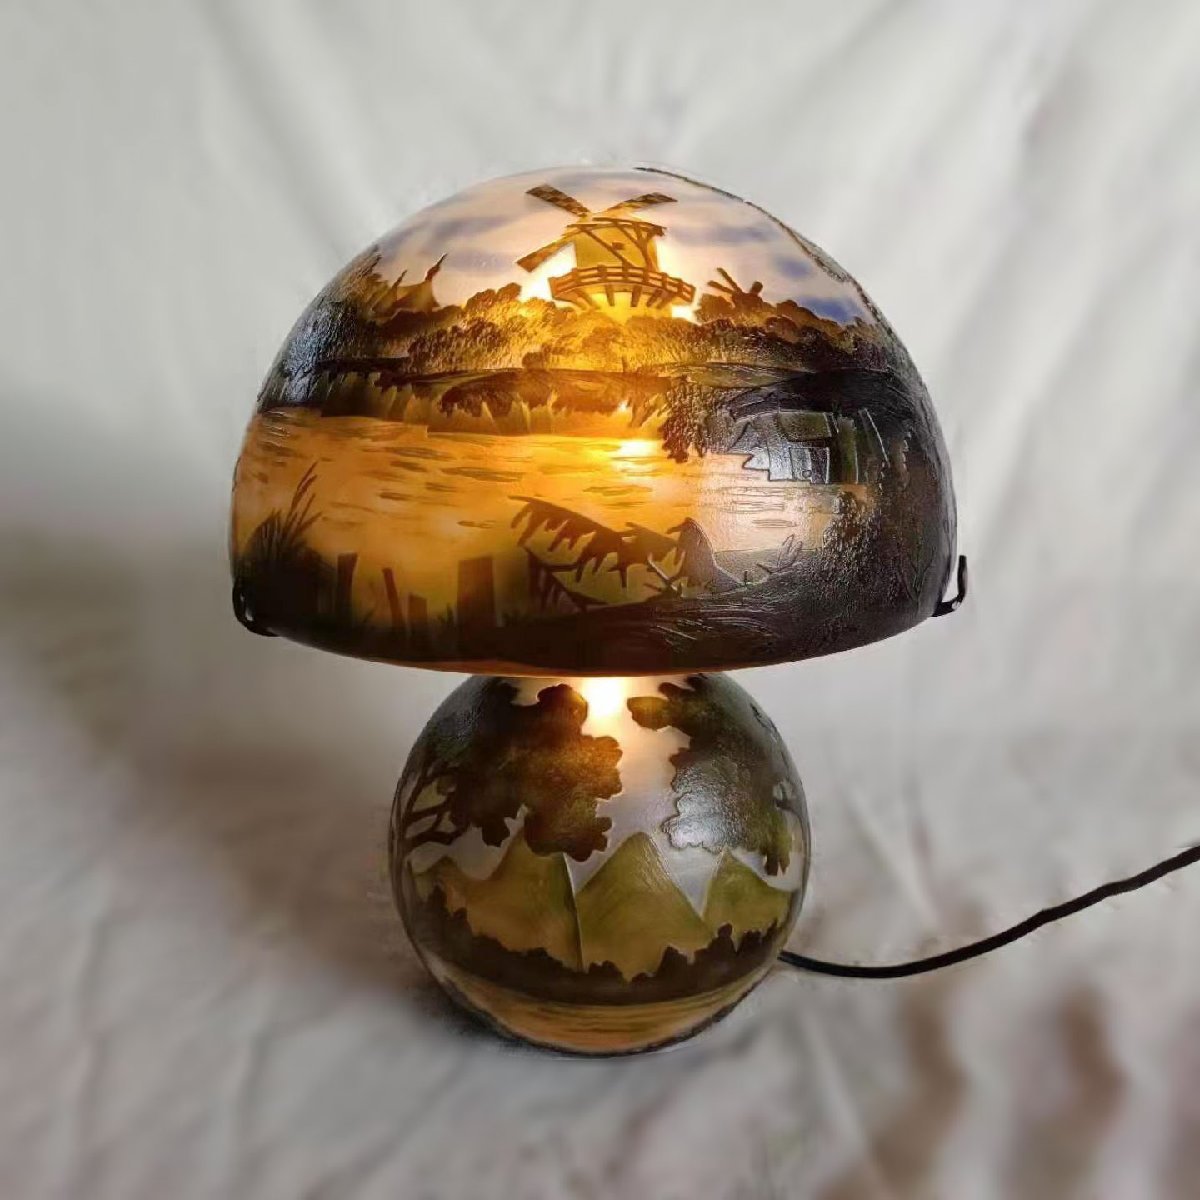 GL143a-ru Novo - лампа emi-ru* галет способ купол наан si- техника ночник античный мебель стол лампа запад изобразительное искусство 